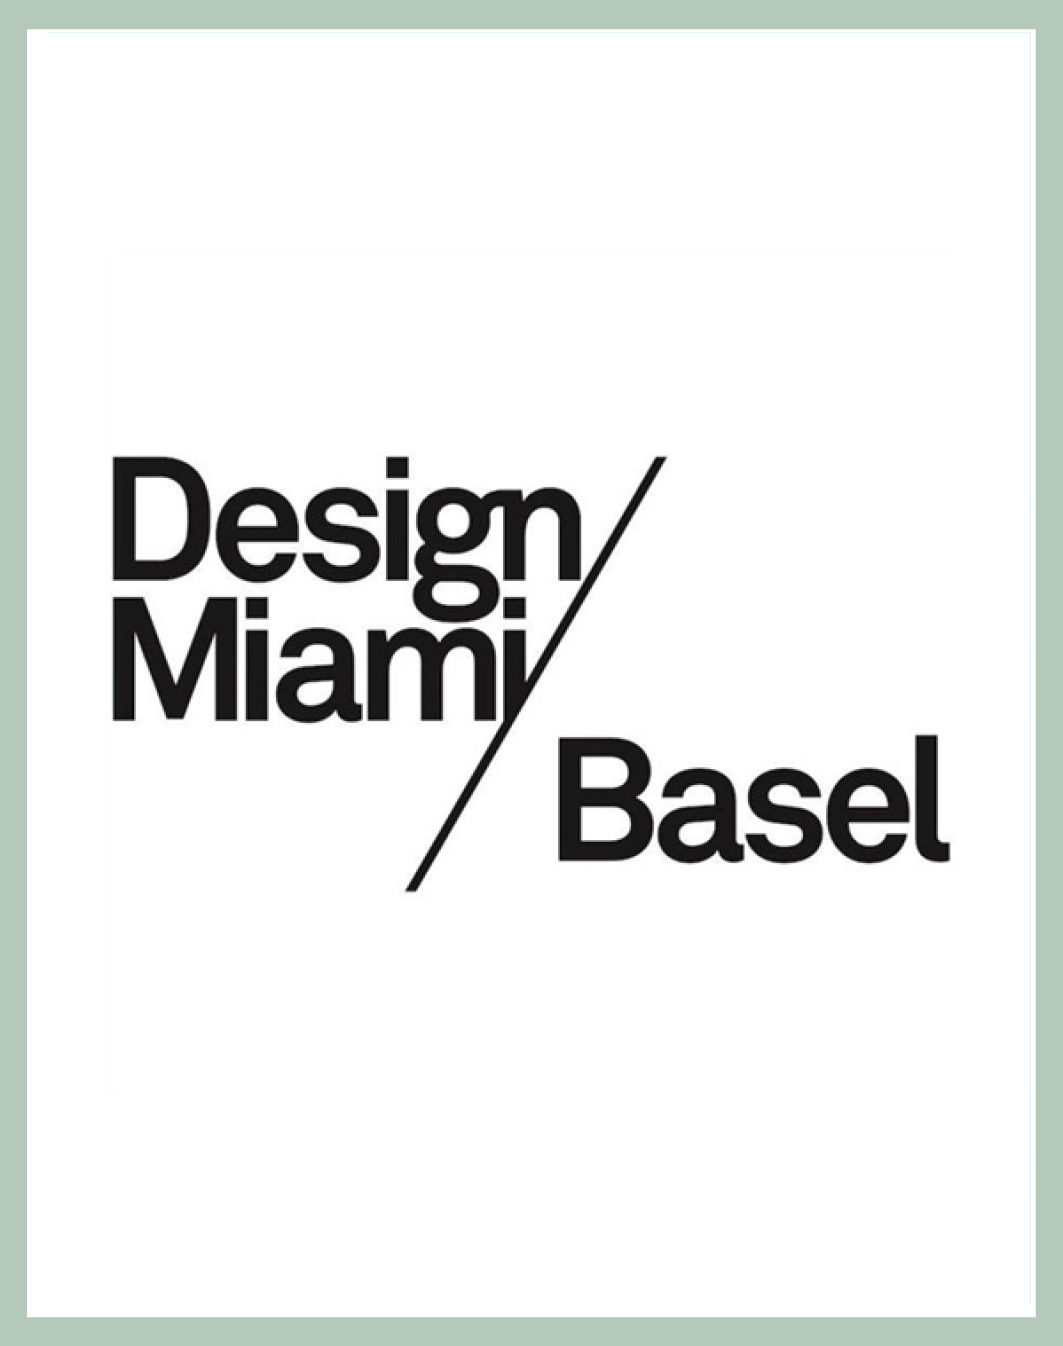 Edward Barber & Jay Osgerby - Design Miami/ Basel 2022